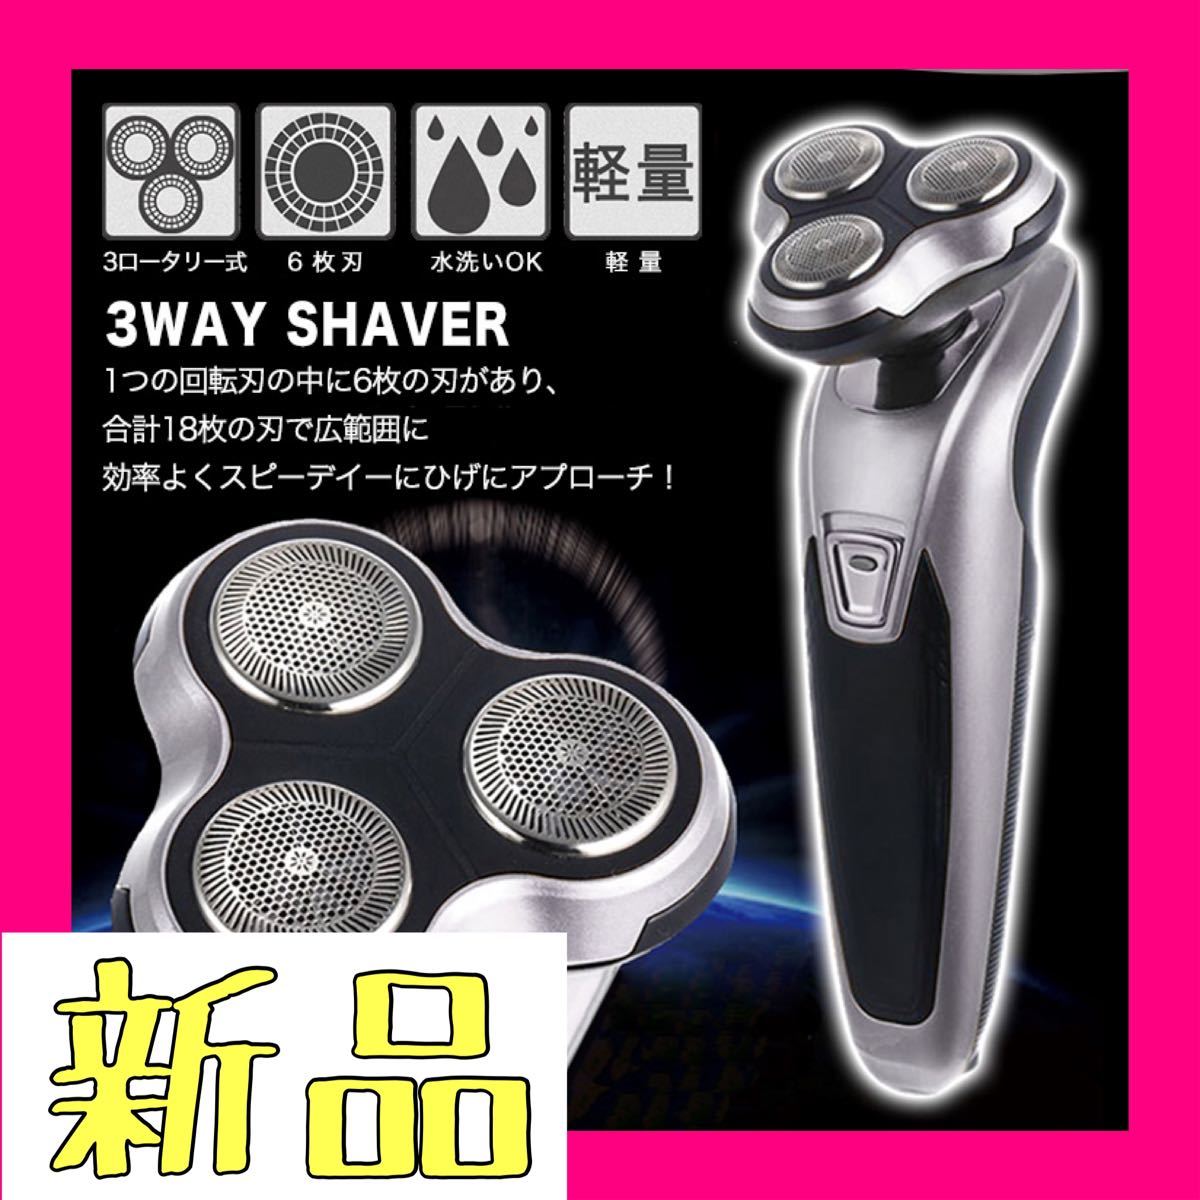 【新品】ダークグレー シェーバー 電動シェーバー 髭剃り 3wayシェーバー 3ロータリー式 6枚刃 水洗い可能 軽量 効率的